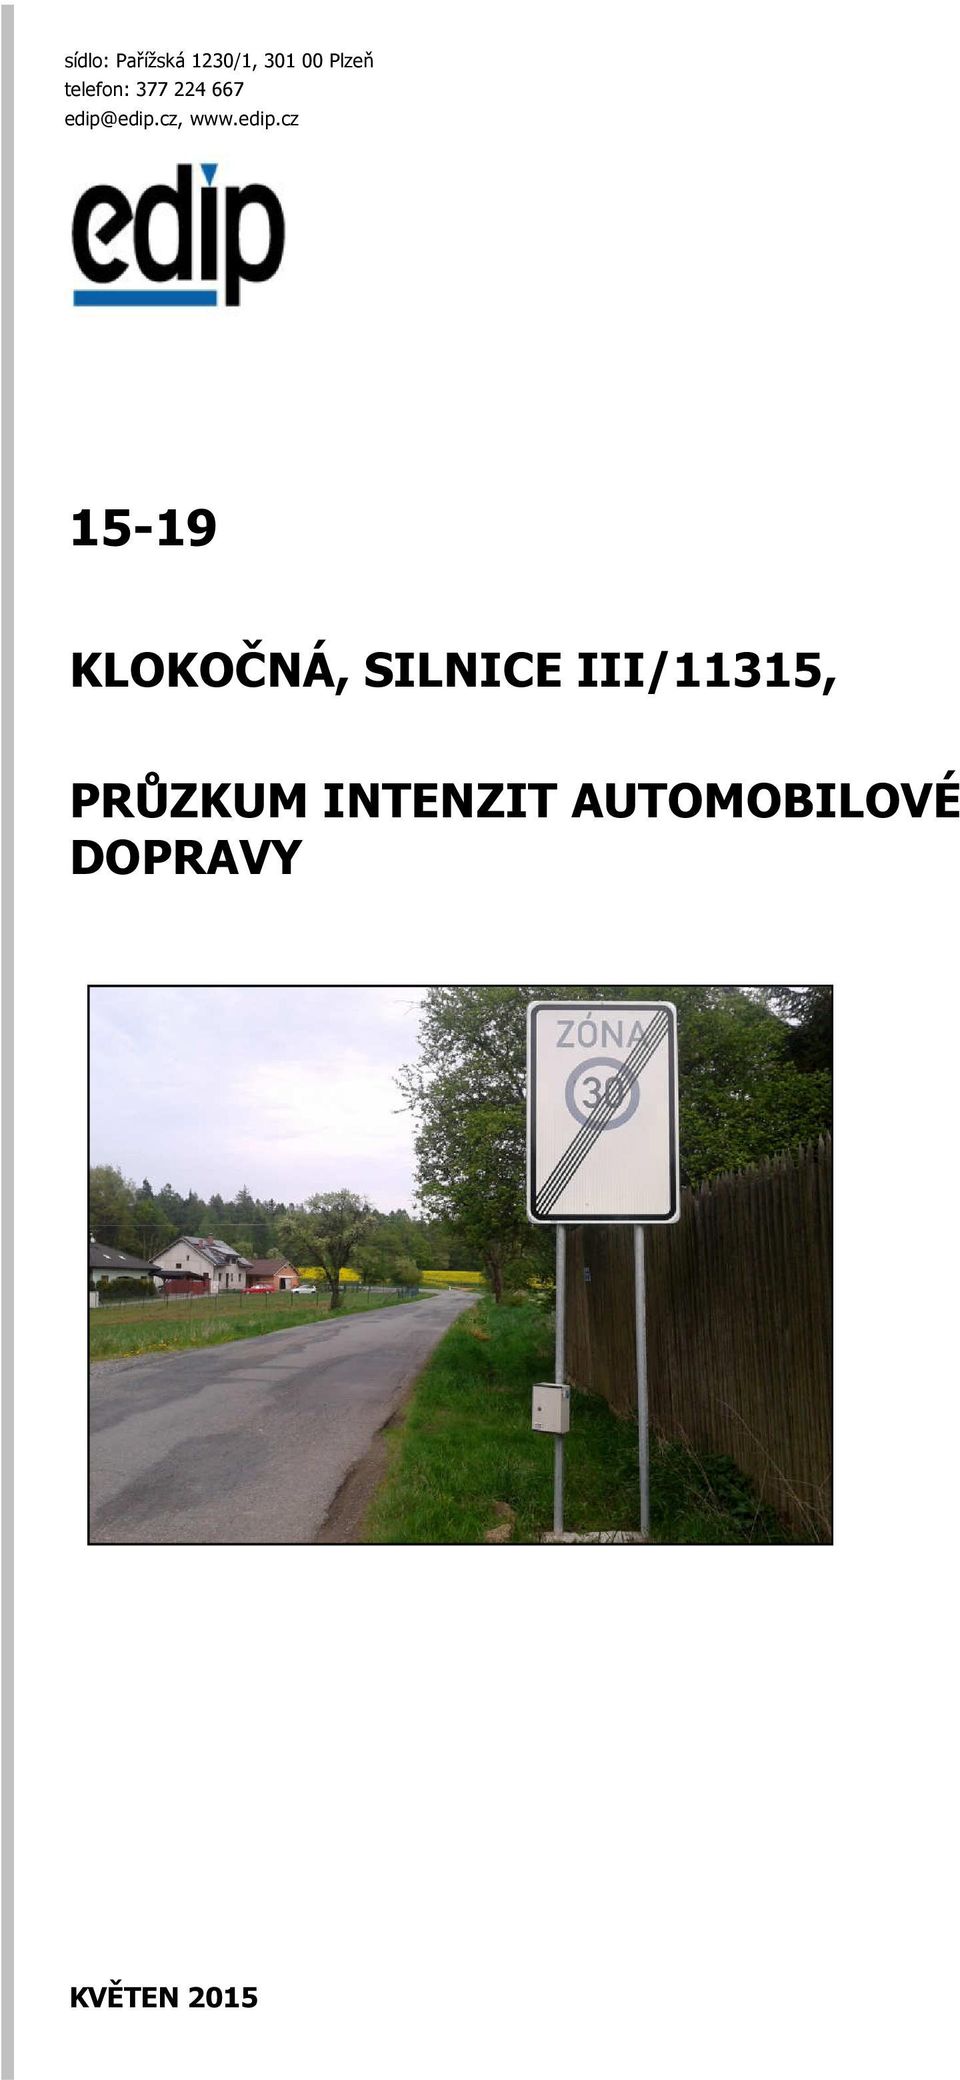 edip.cz, www.edip.cz 15-19 KLOKOČNÁ,